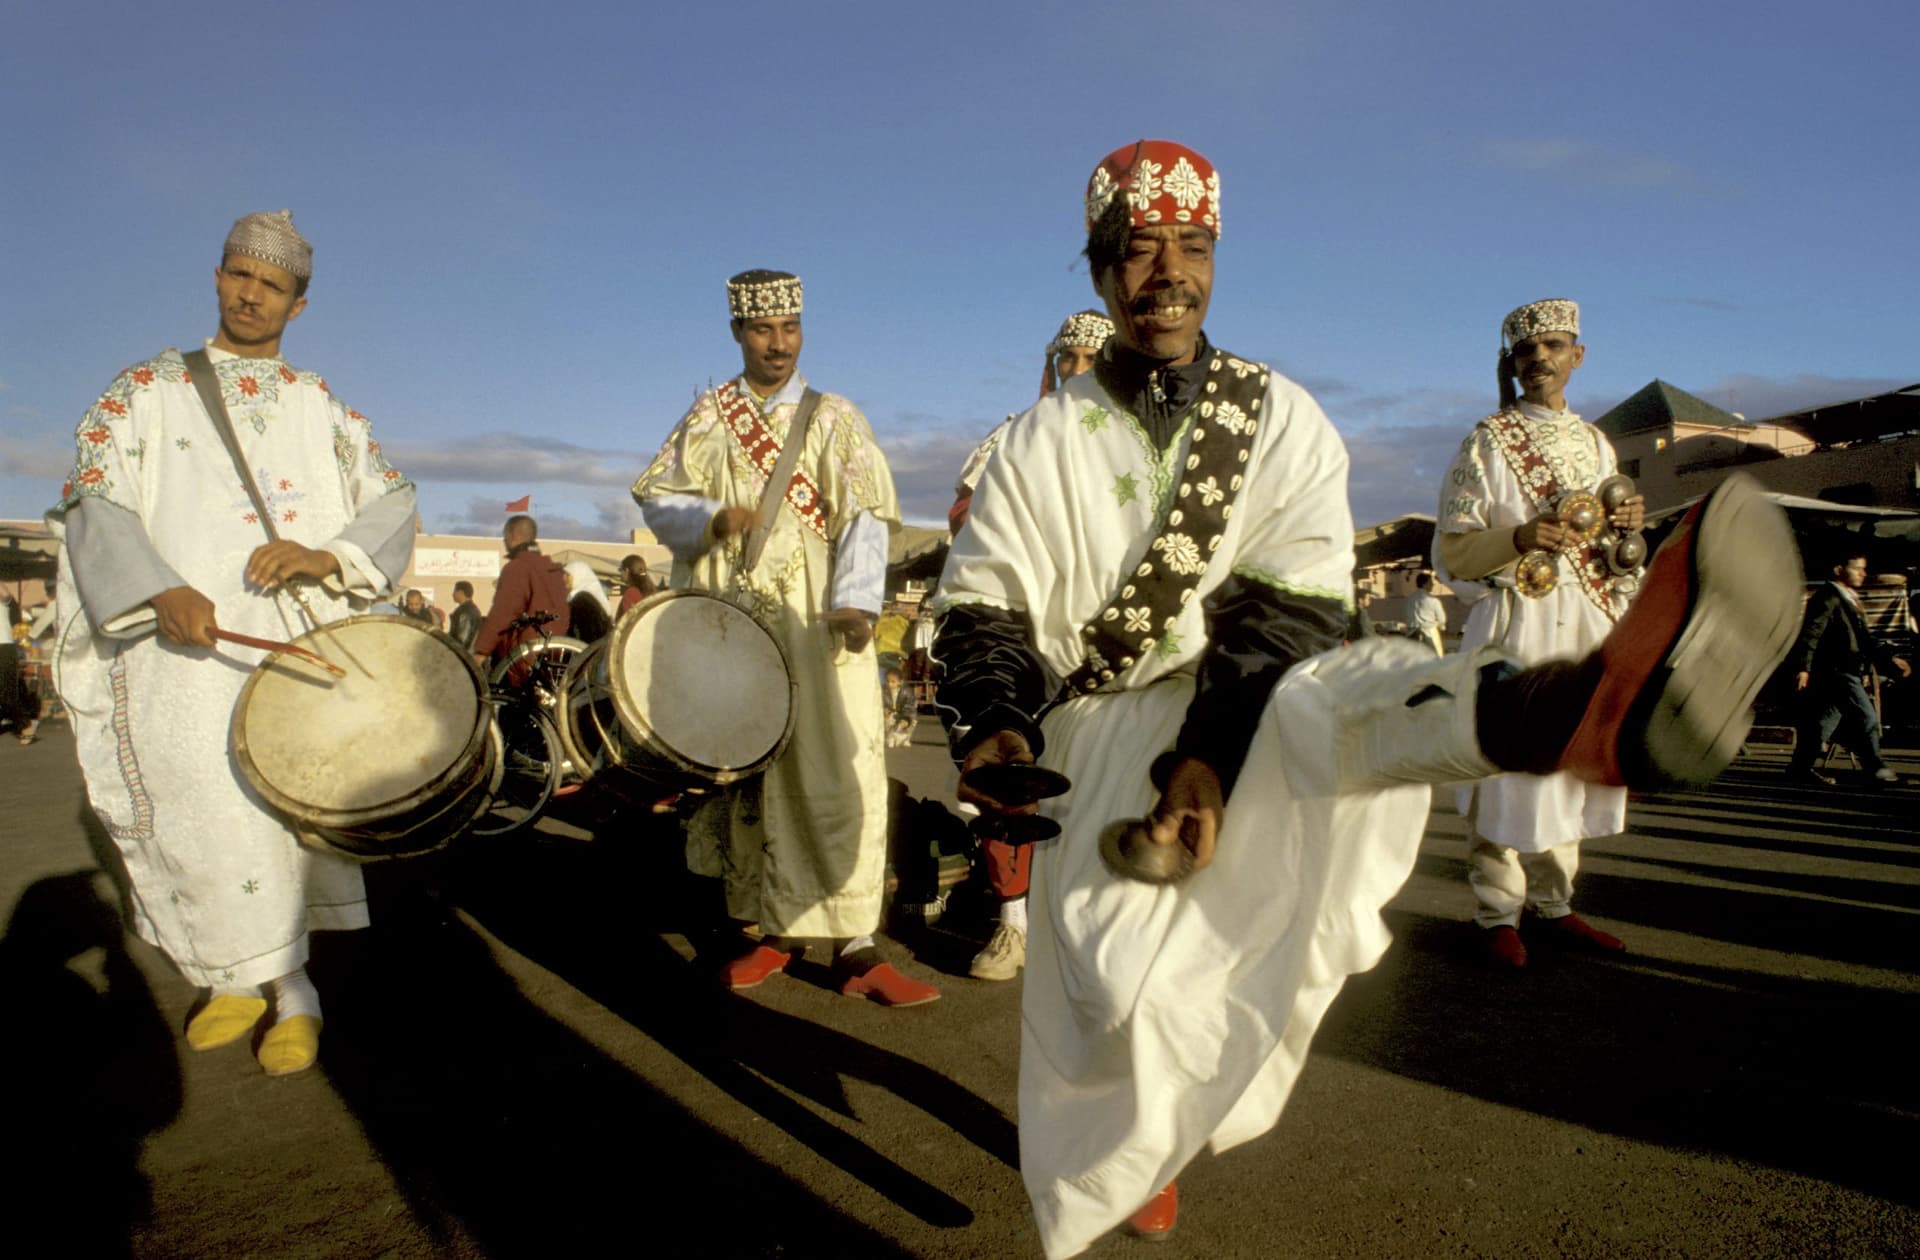 Musiciens gnaoua dansant dans la place Jamaa el Fna au Maroc